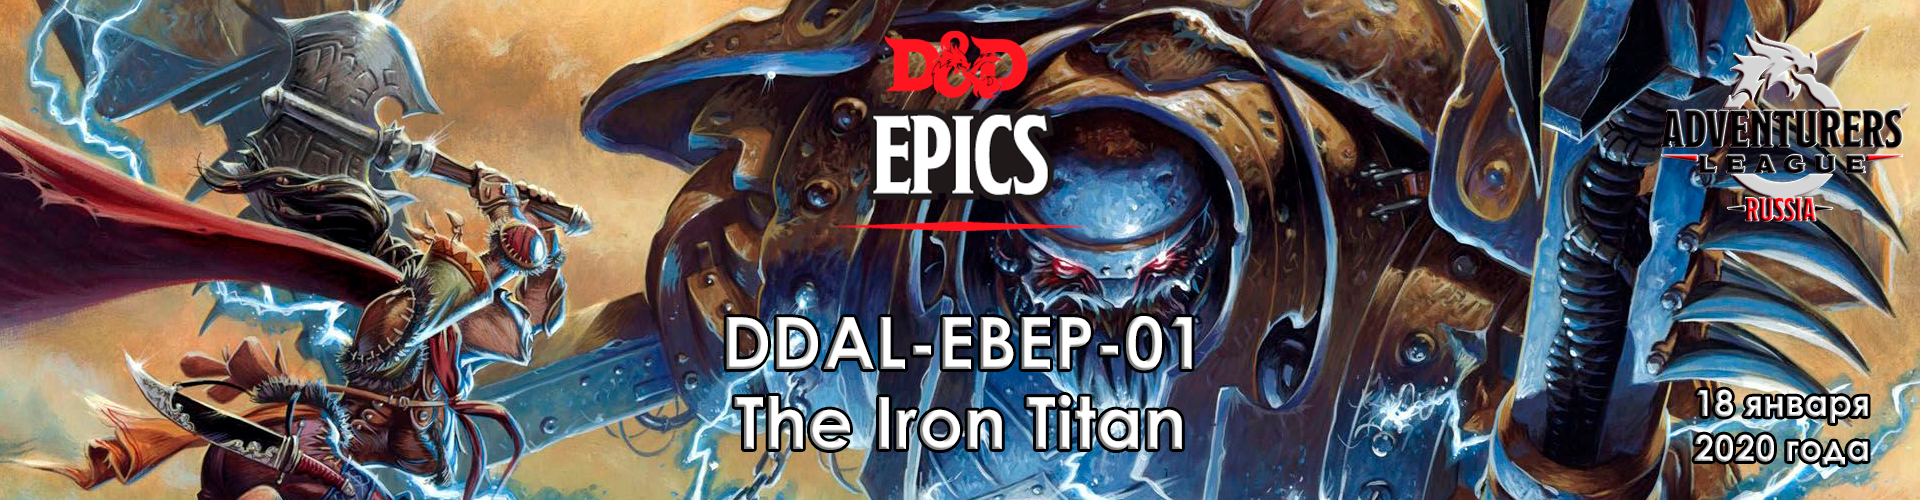 DDAL-EBEP-01 The Iron Titan